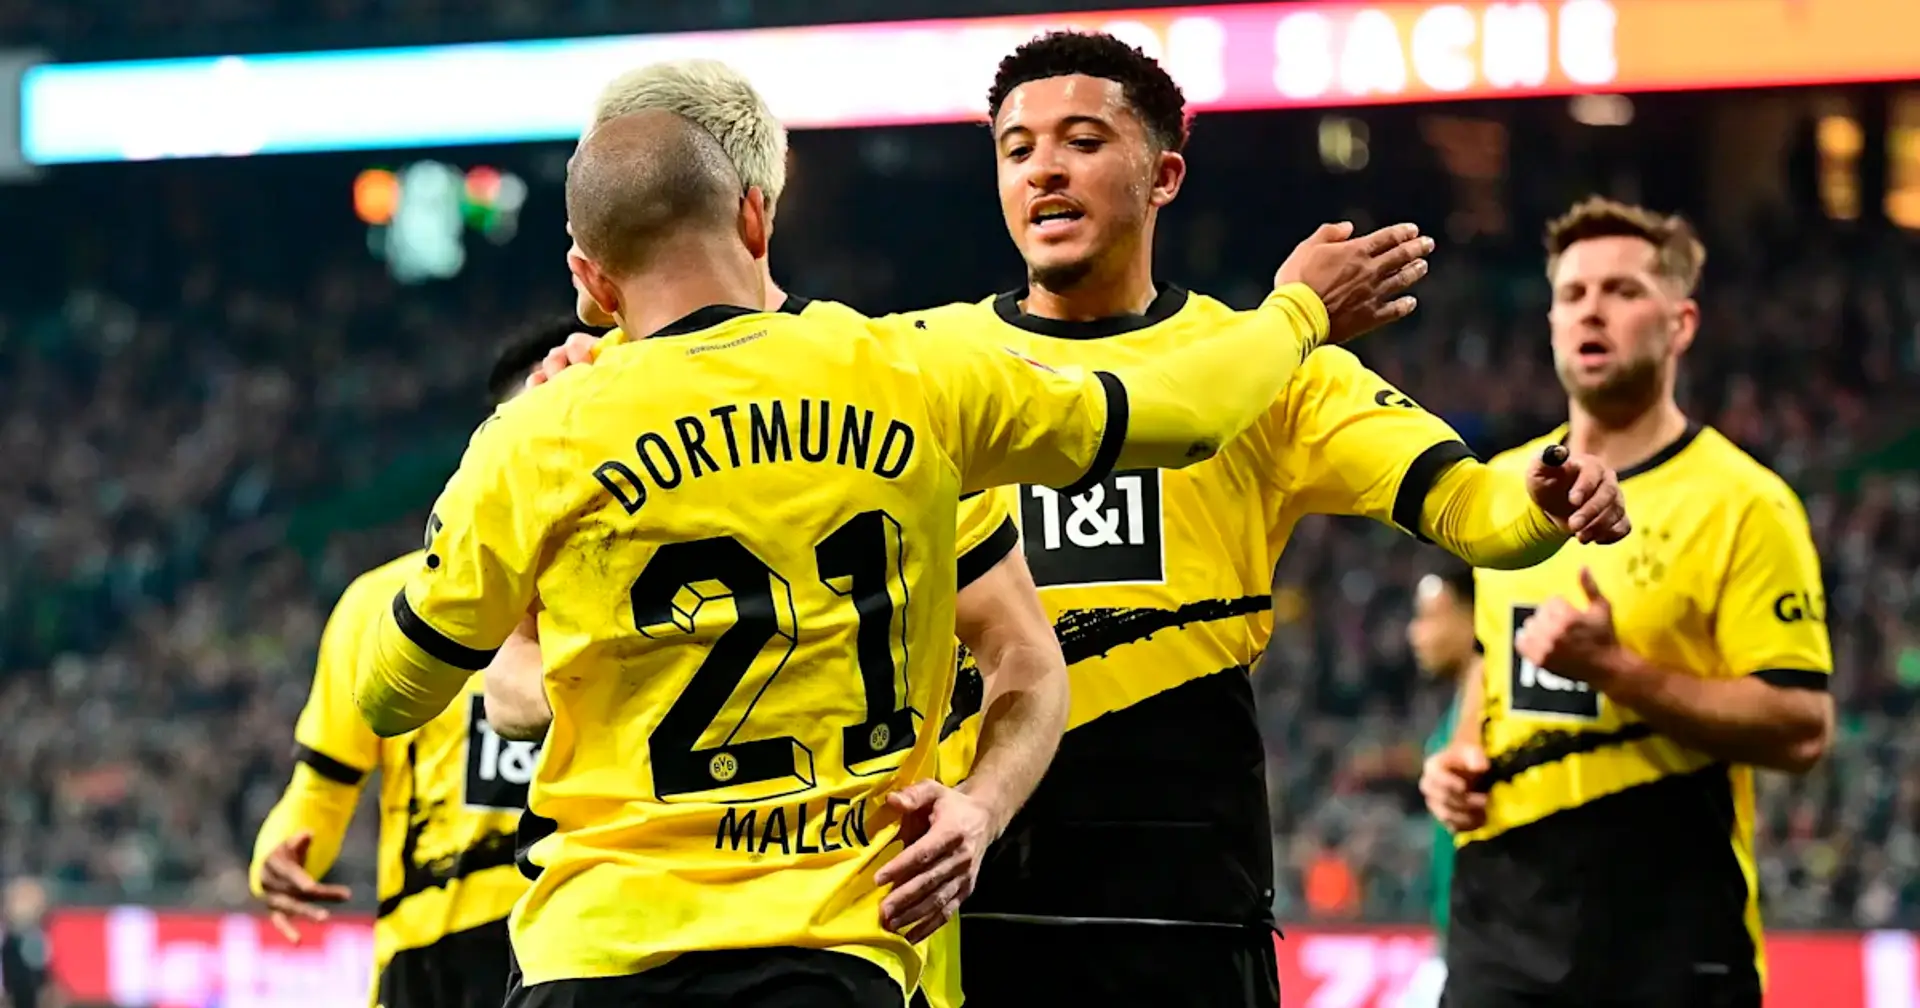 Über 1000 Tage Pause: Sancho trifft erstmals seit Rückkehr für Dortmund und stellt einen Rekord ein